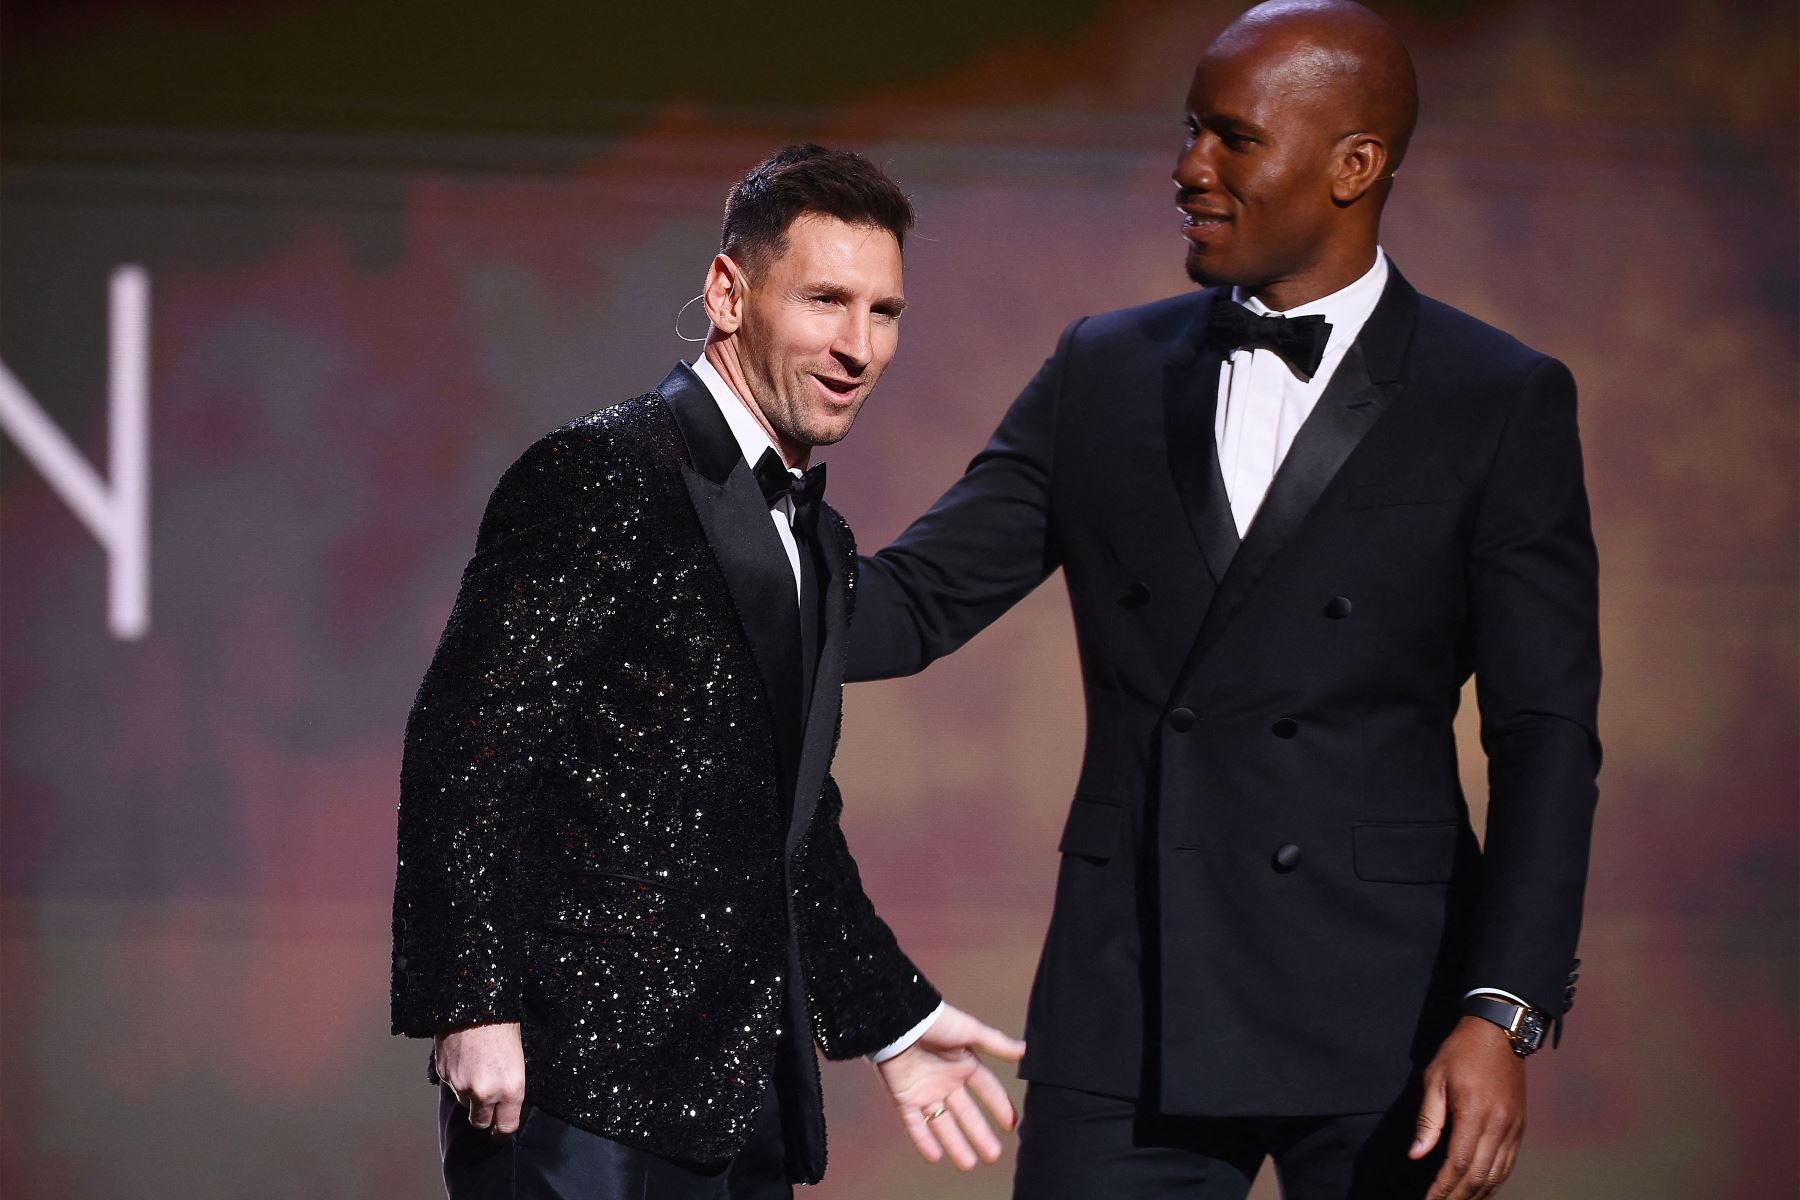 El delantero argentino del Paris Saint-Germain Lionel Messi saluda al exjugador de fútbol de Costa de Marfil y presentador nocturno Didier Drogba después de recibir el premio Ballon d